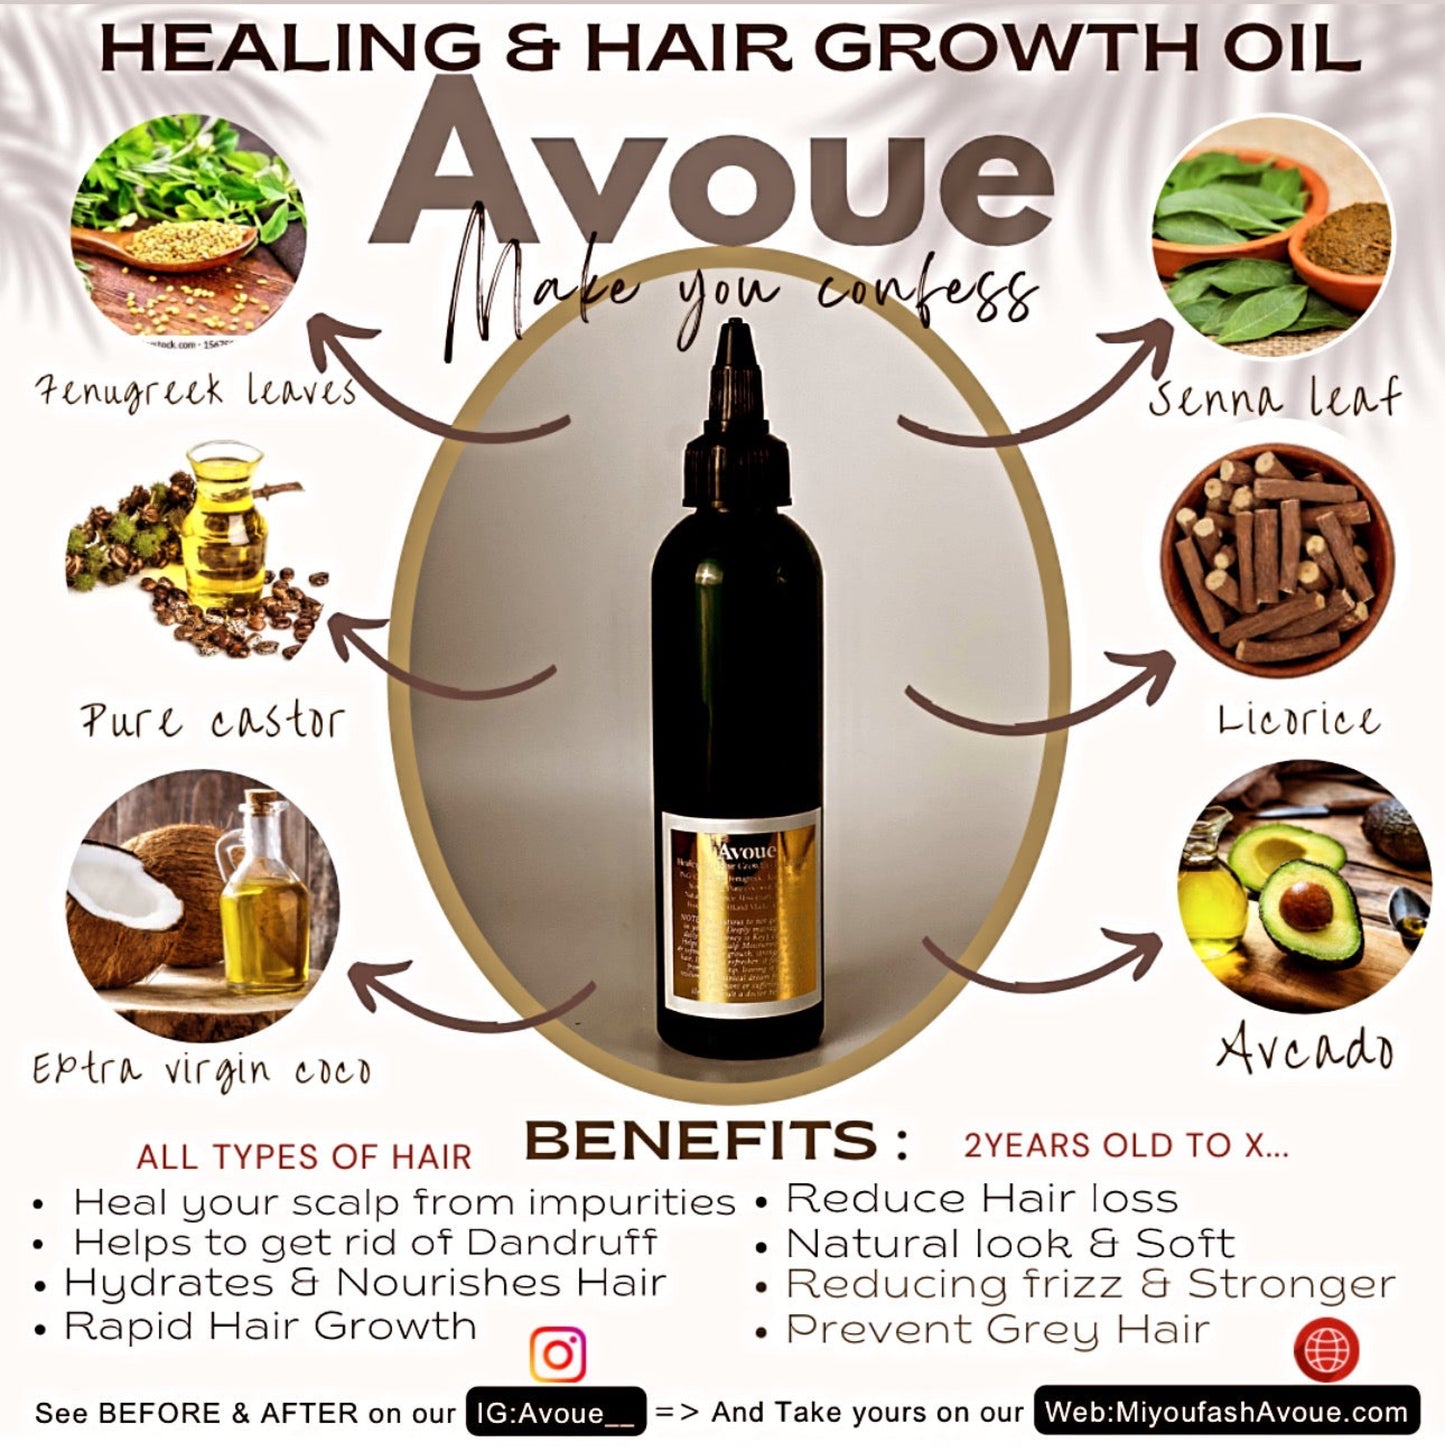 Healing & Hair Growth Oil